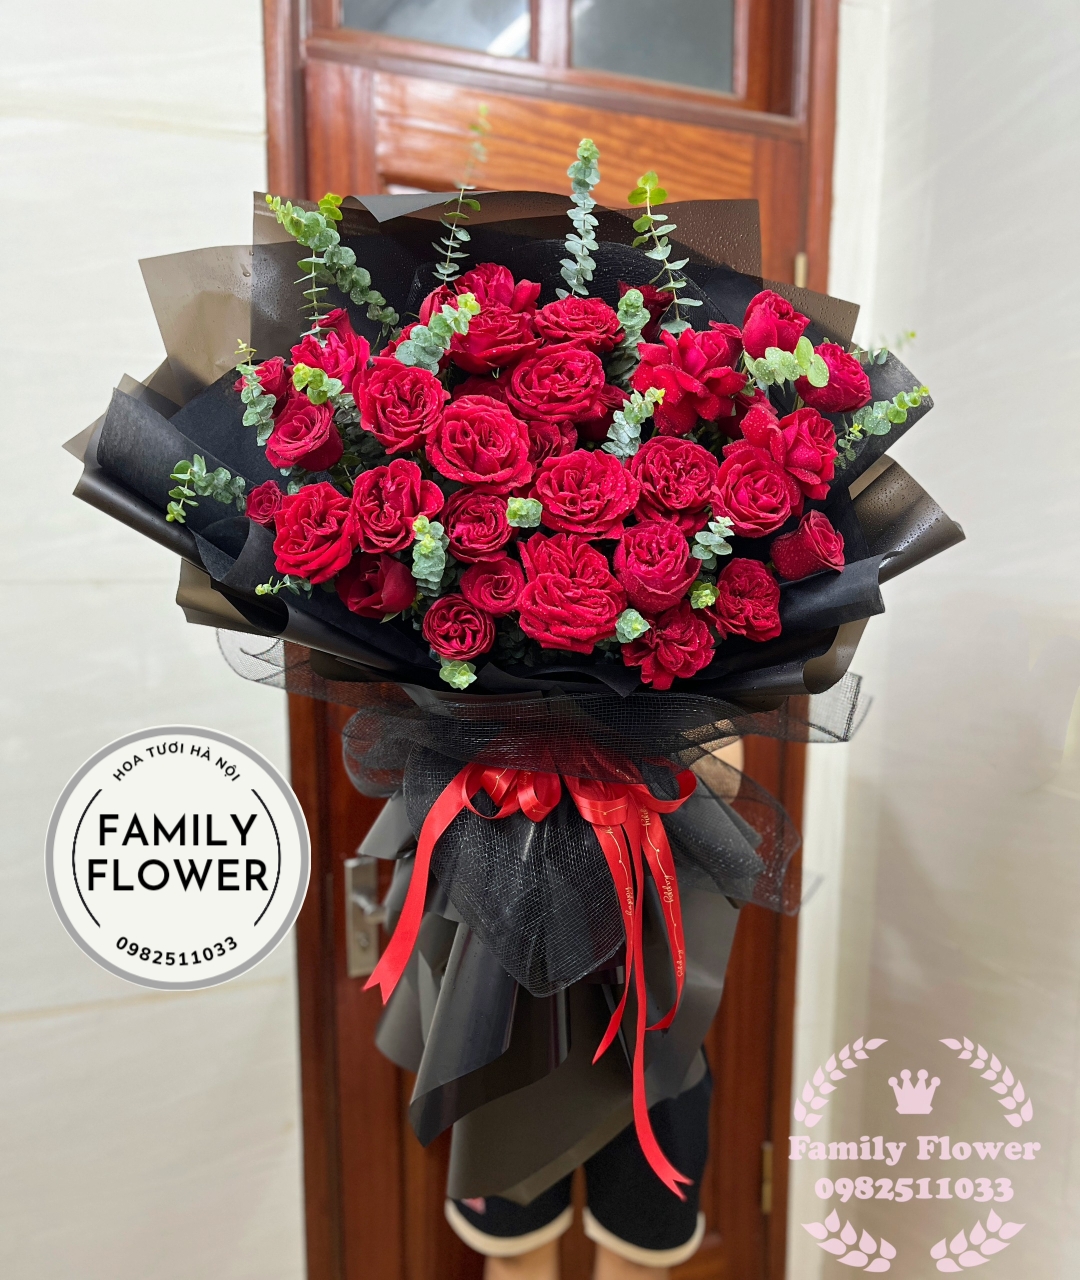 Bó hoa hồng đỏ tặng người yêu nhân dịp 20 tháng 10 ! Hoa tặng ngày phụ nữ Việt Nam 20 -10, hoa tươi Hà Nội